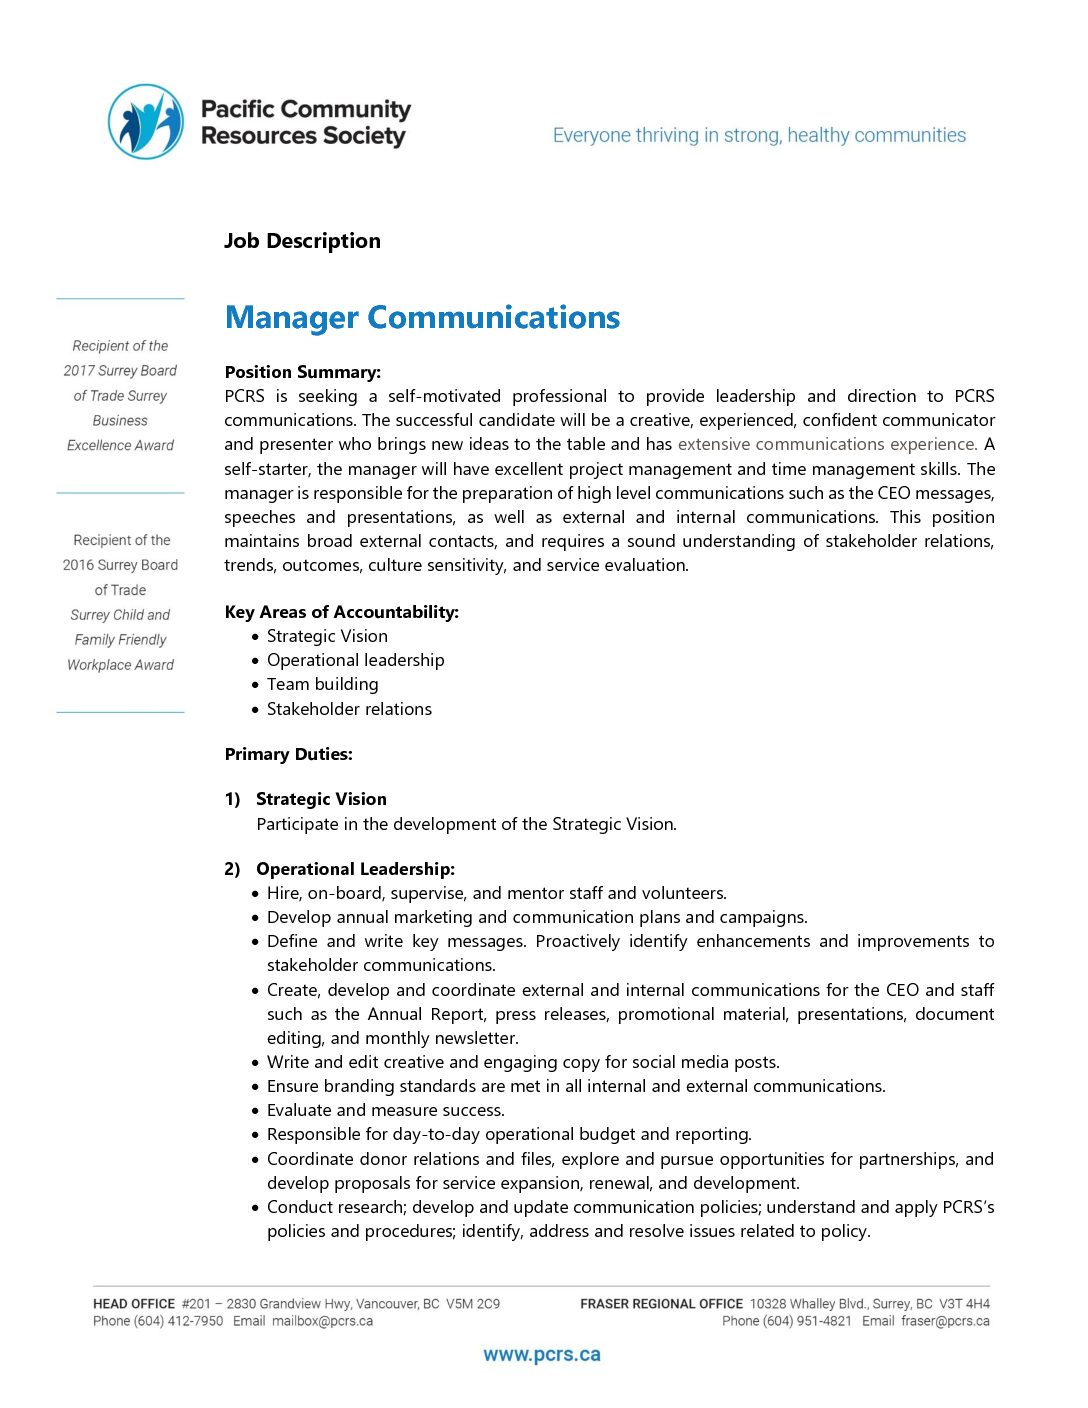 Corporate communication job descriptions